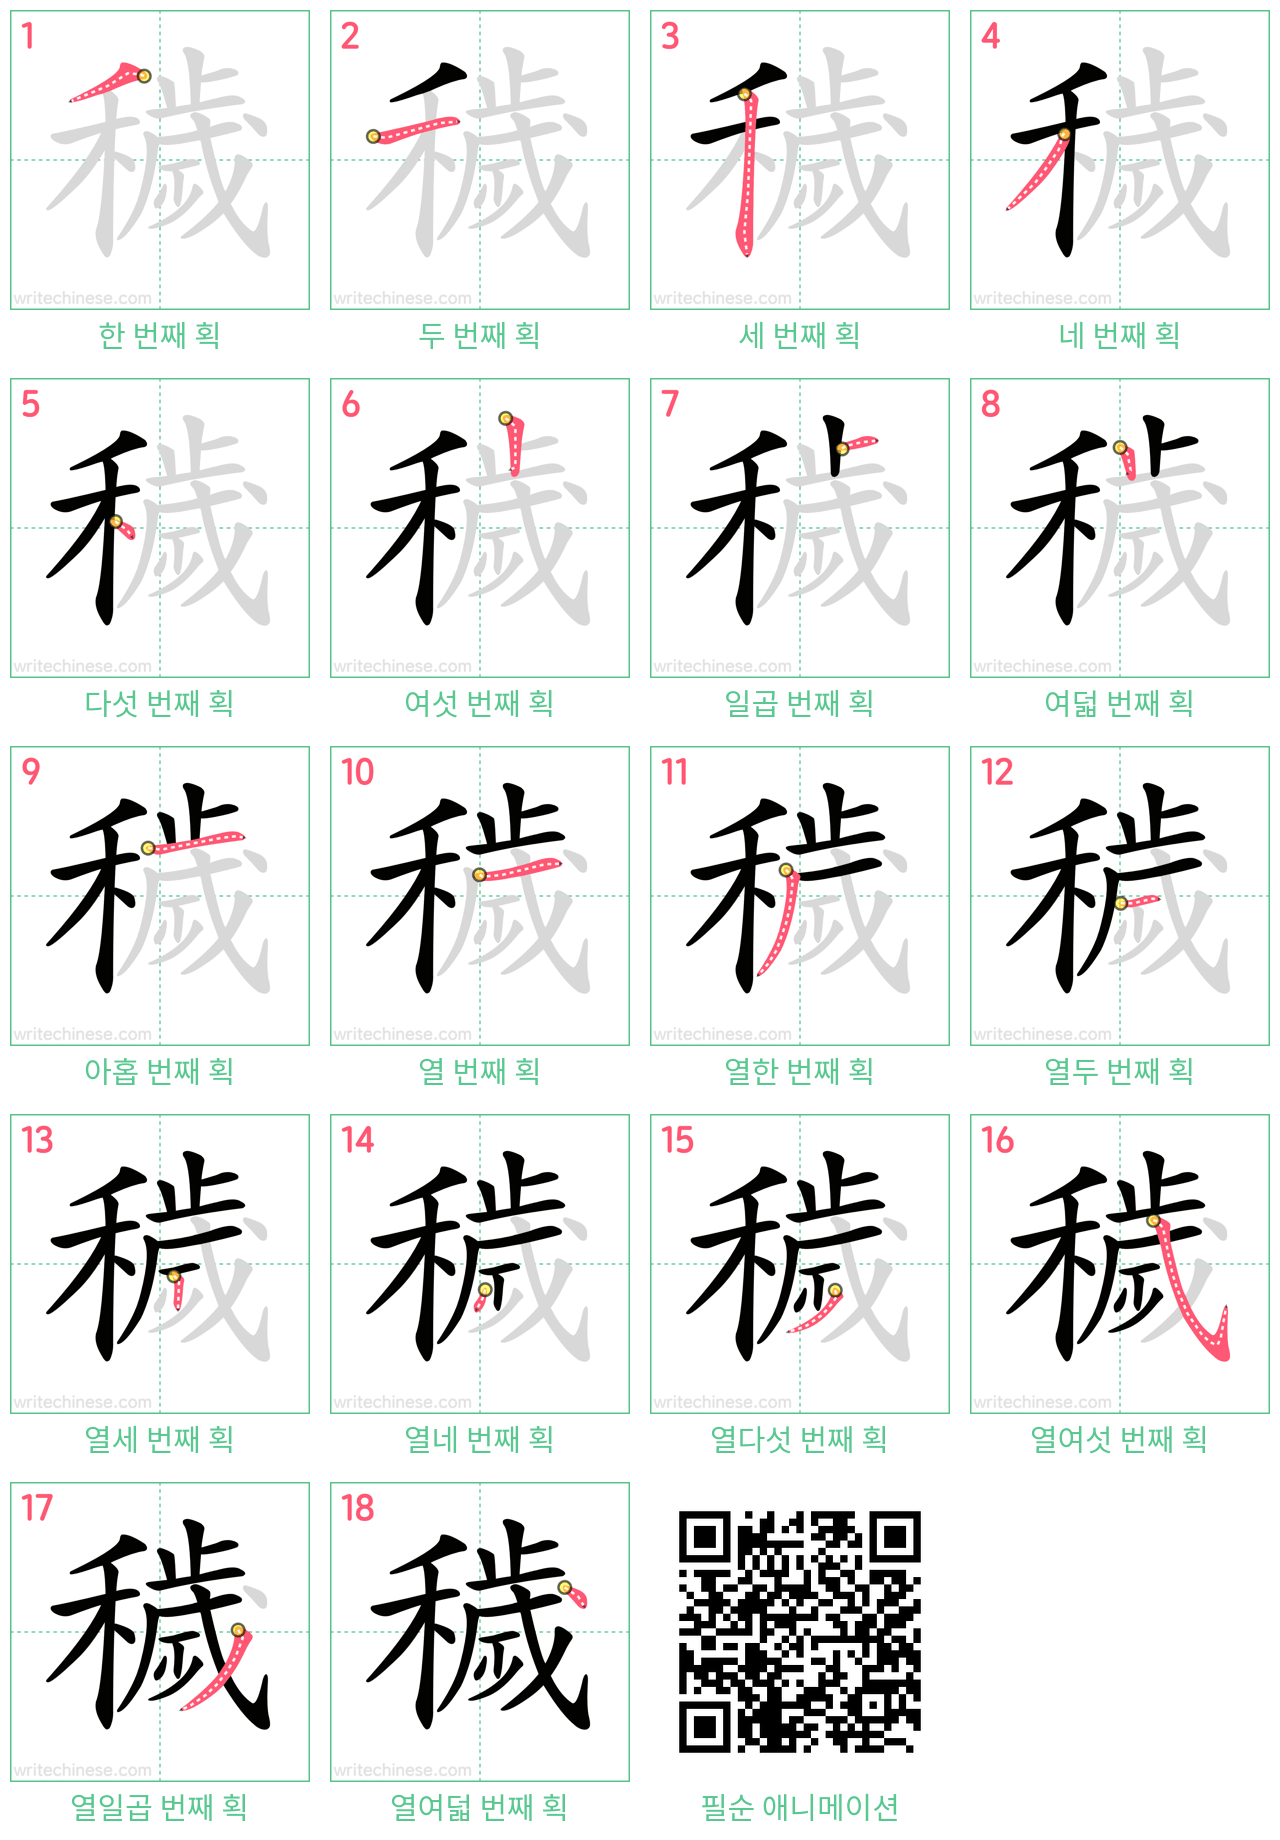 穢 step-by-step stroke order diagrams